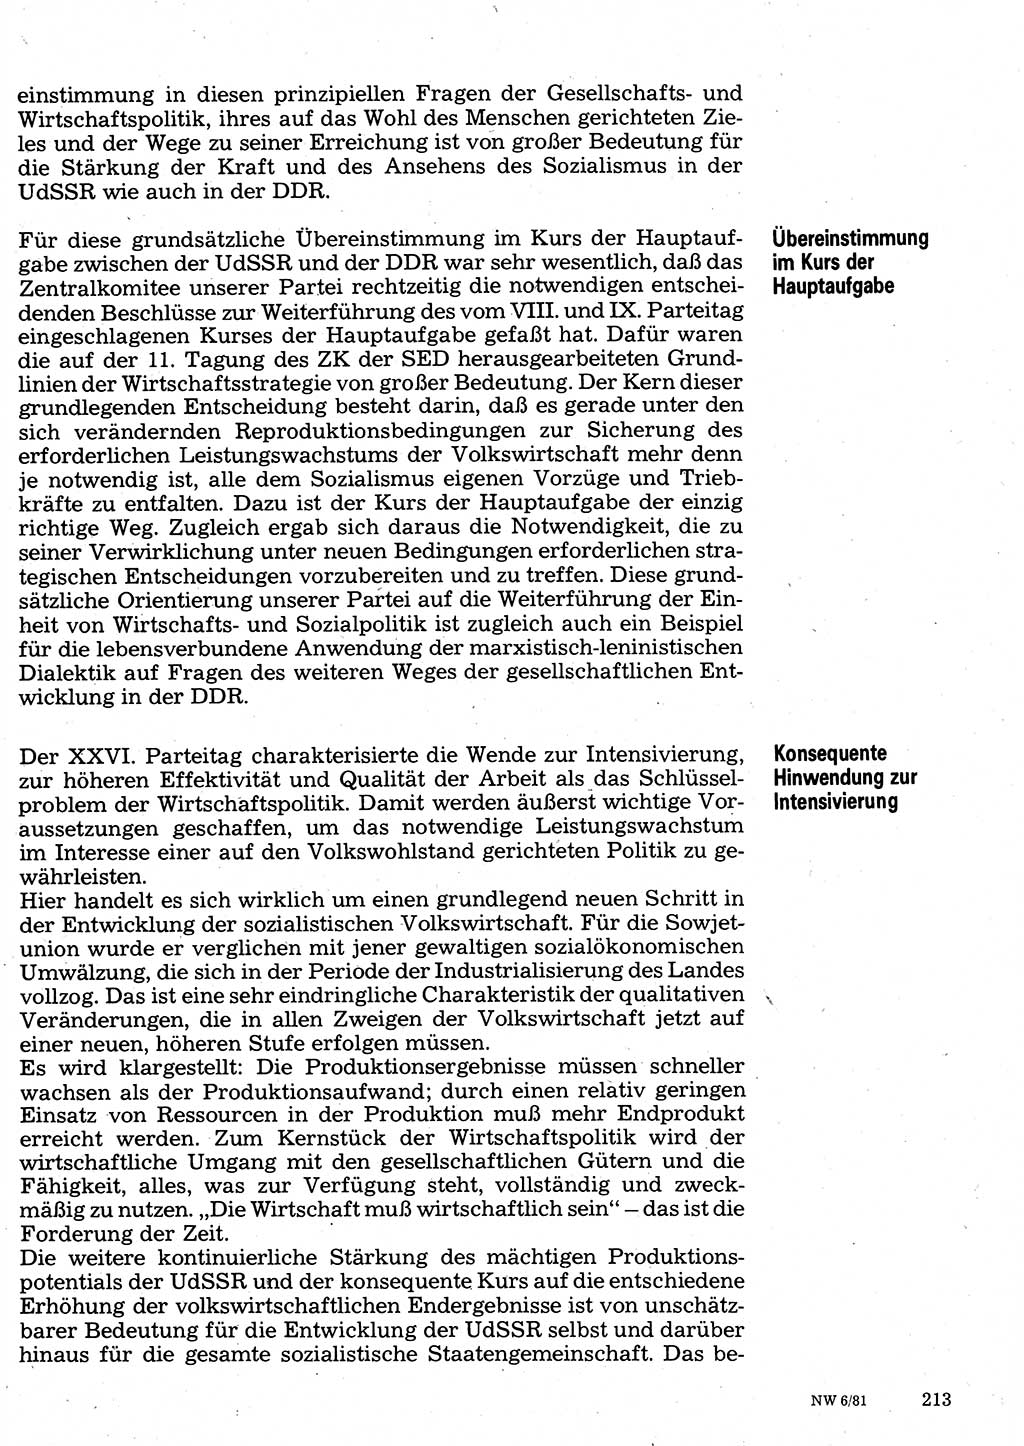 Neuer Weg (NW), Organ des Zentralkomitees (ZK) der SED (Sozialistische Einheitspartei Deutschlands) für Fragen des Parteilebens, 36. Jahrgang [Deutsche Demokratische Republik (DDR)] 1981, Seite 213 (NW ZK SED DDR 1981, S. 213)